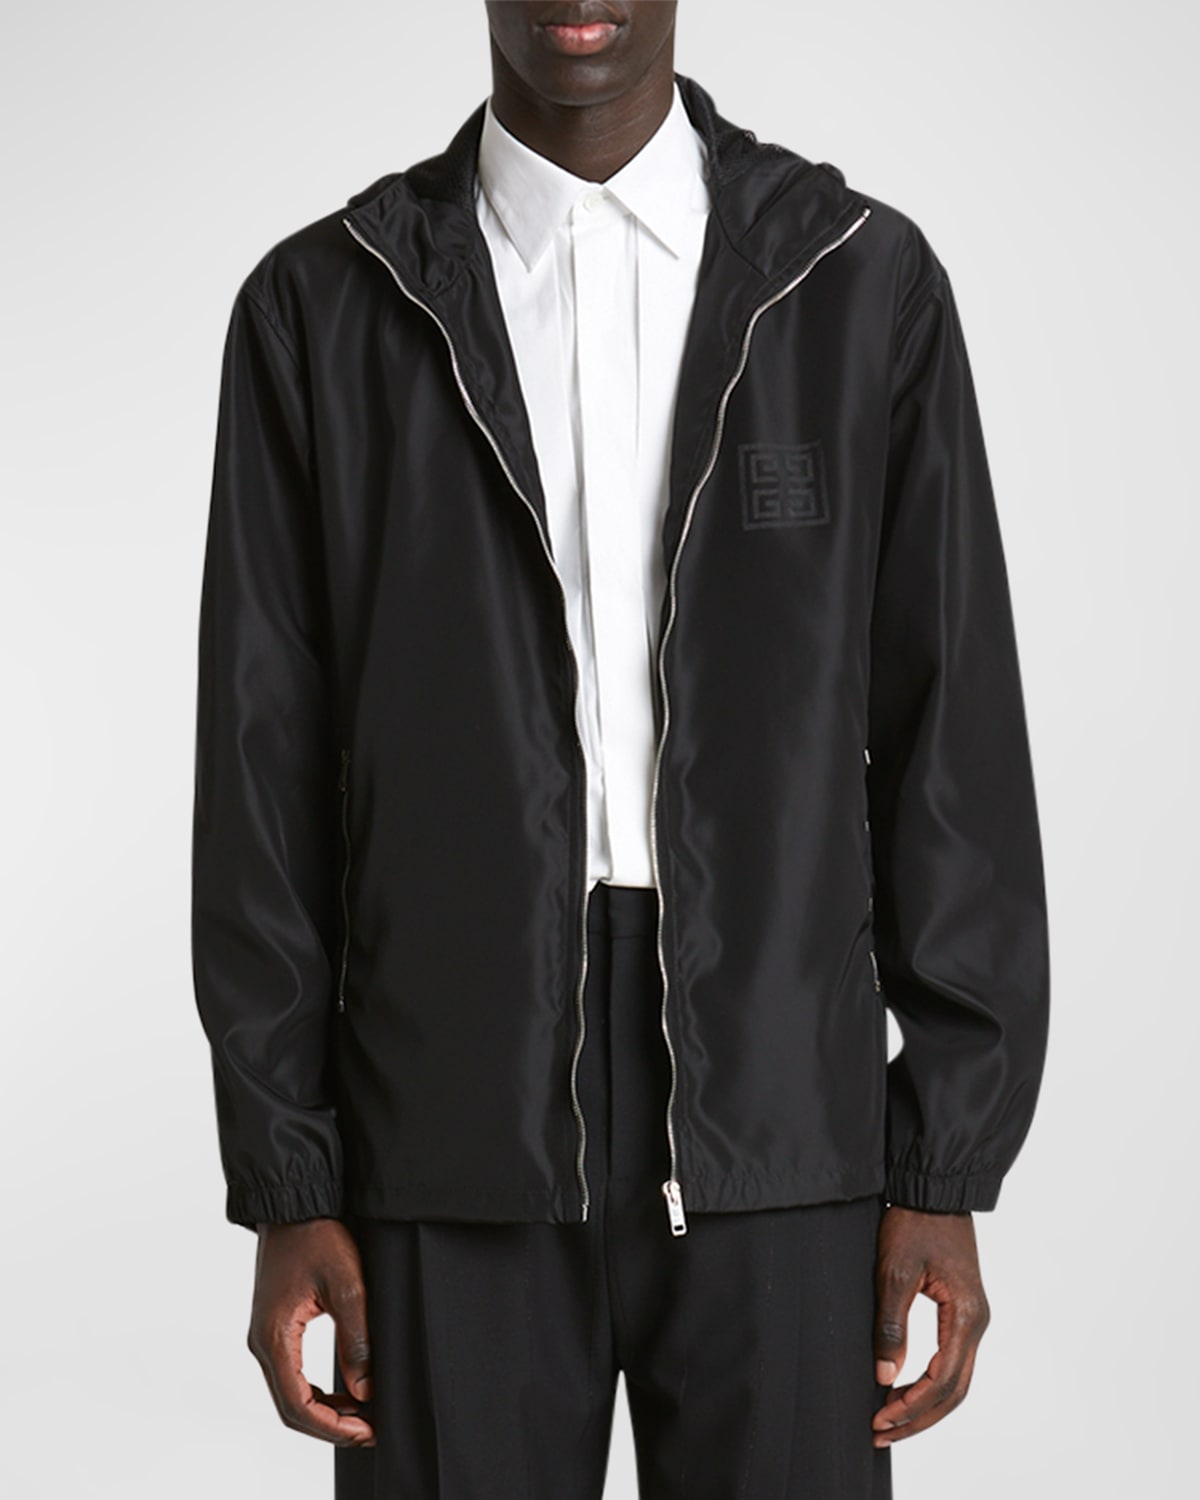 Givenchy Men's 4g Jacquard Wind-resistant Jacket In Black